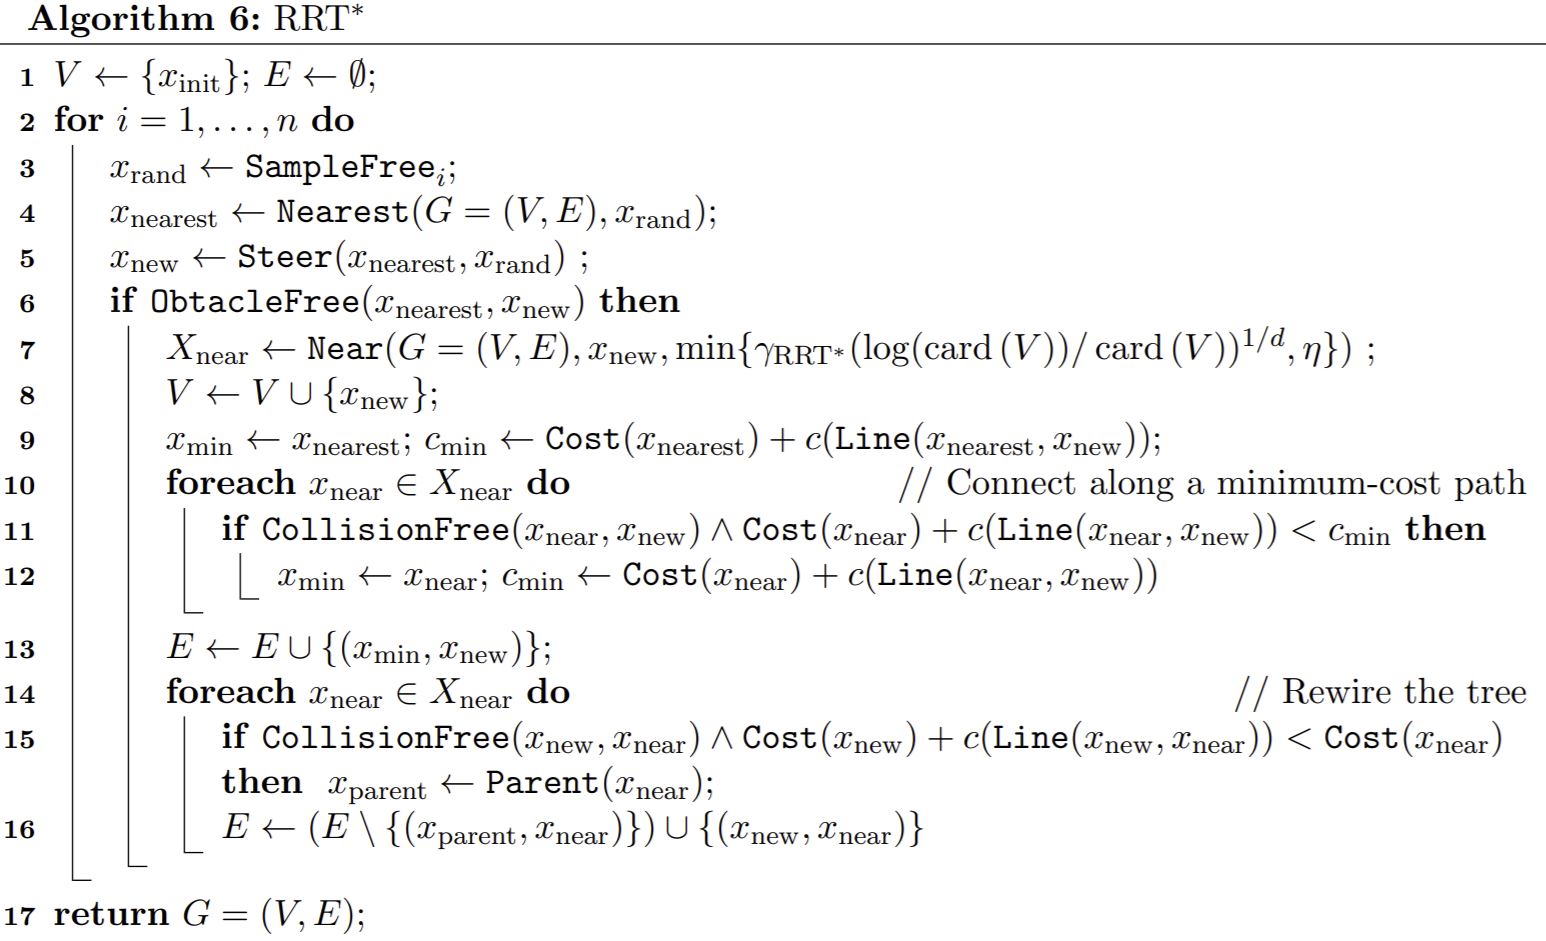 [RRT* pseudo code.](https://arxiv.org/pdf/1105.1186.pdf)